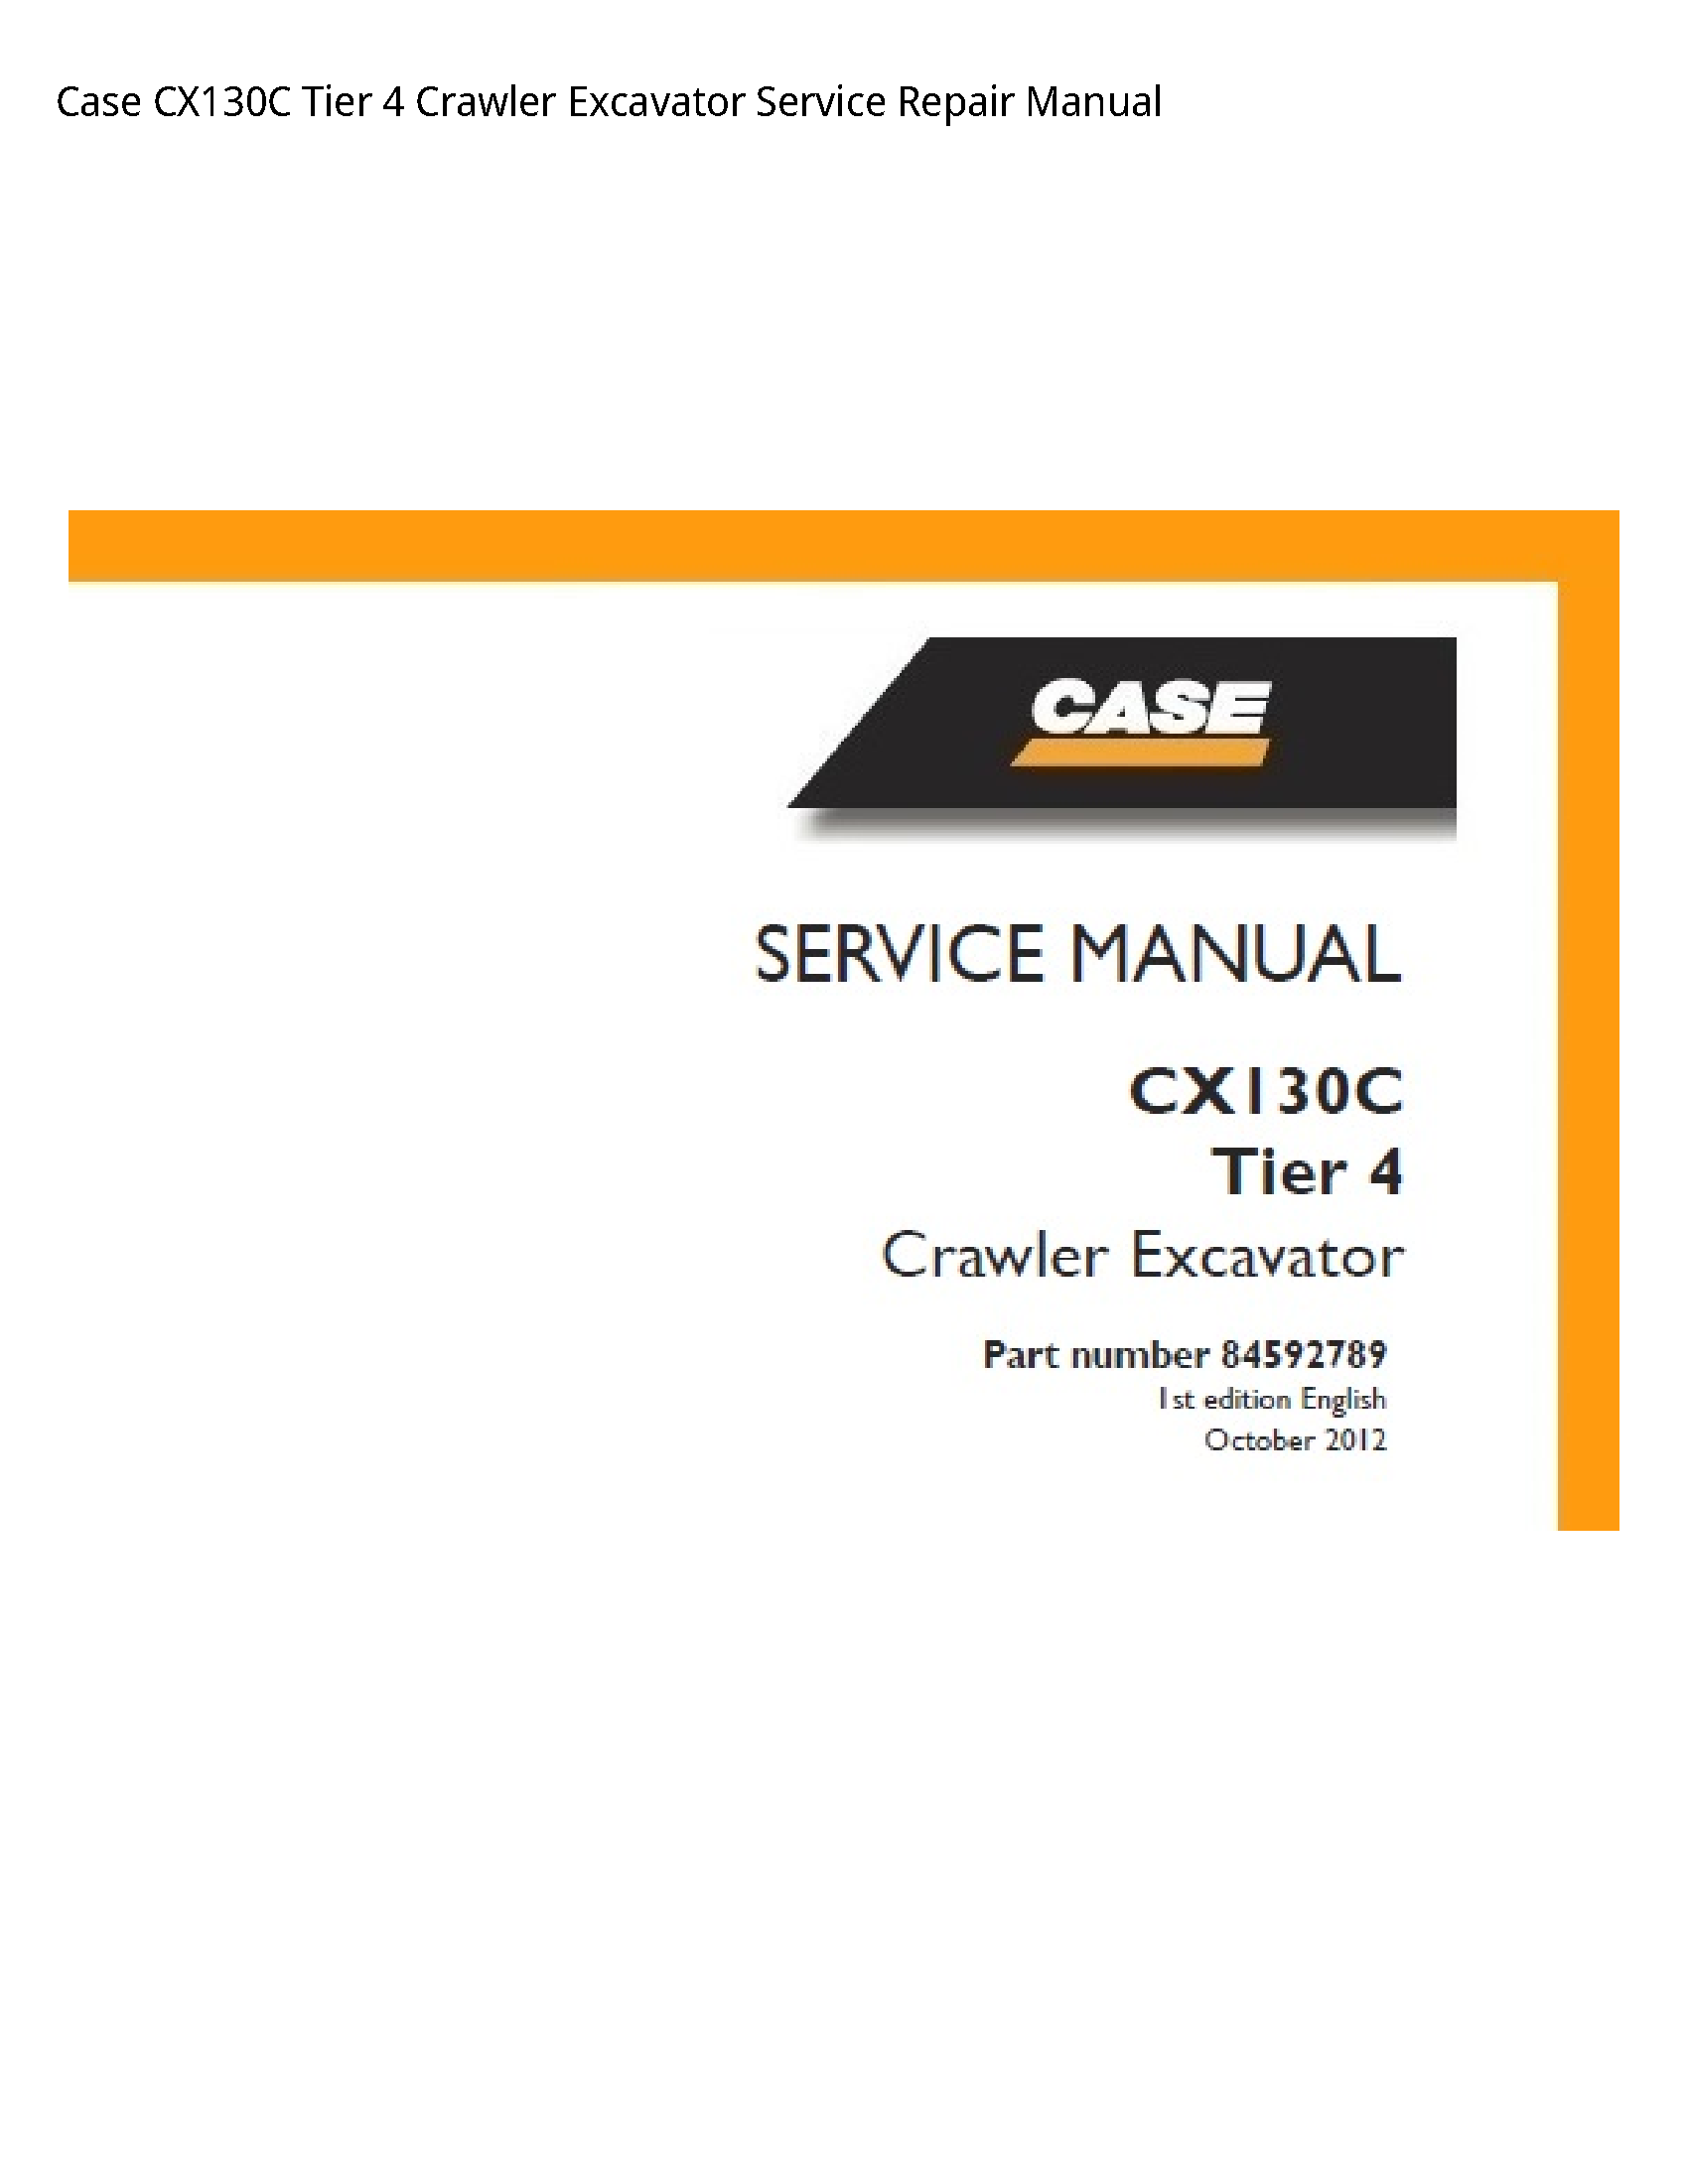 Case/Case IH CX130C Tier Crawler Excavator manual